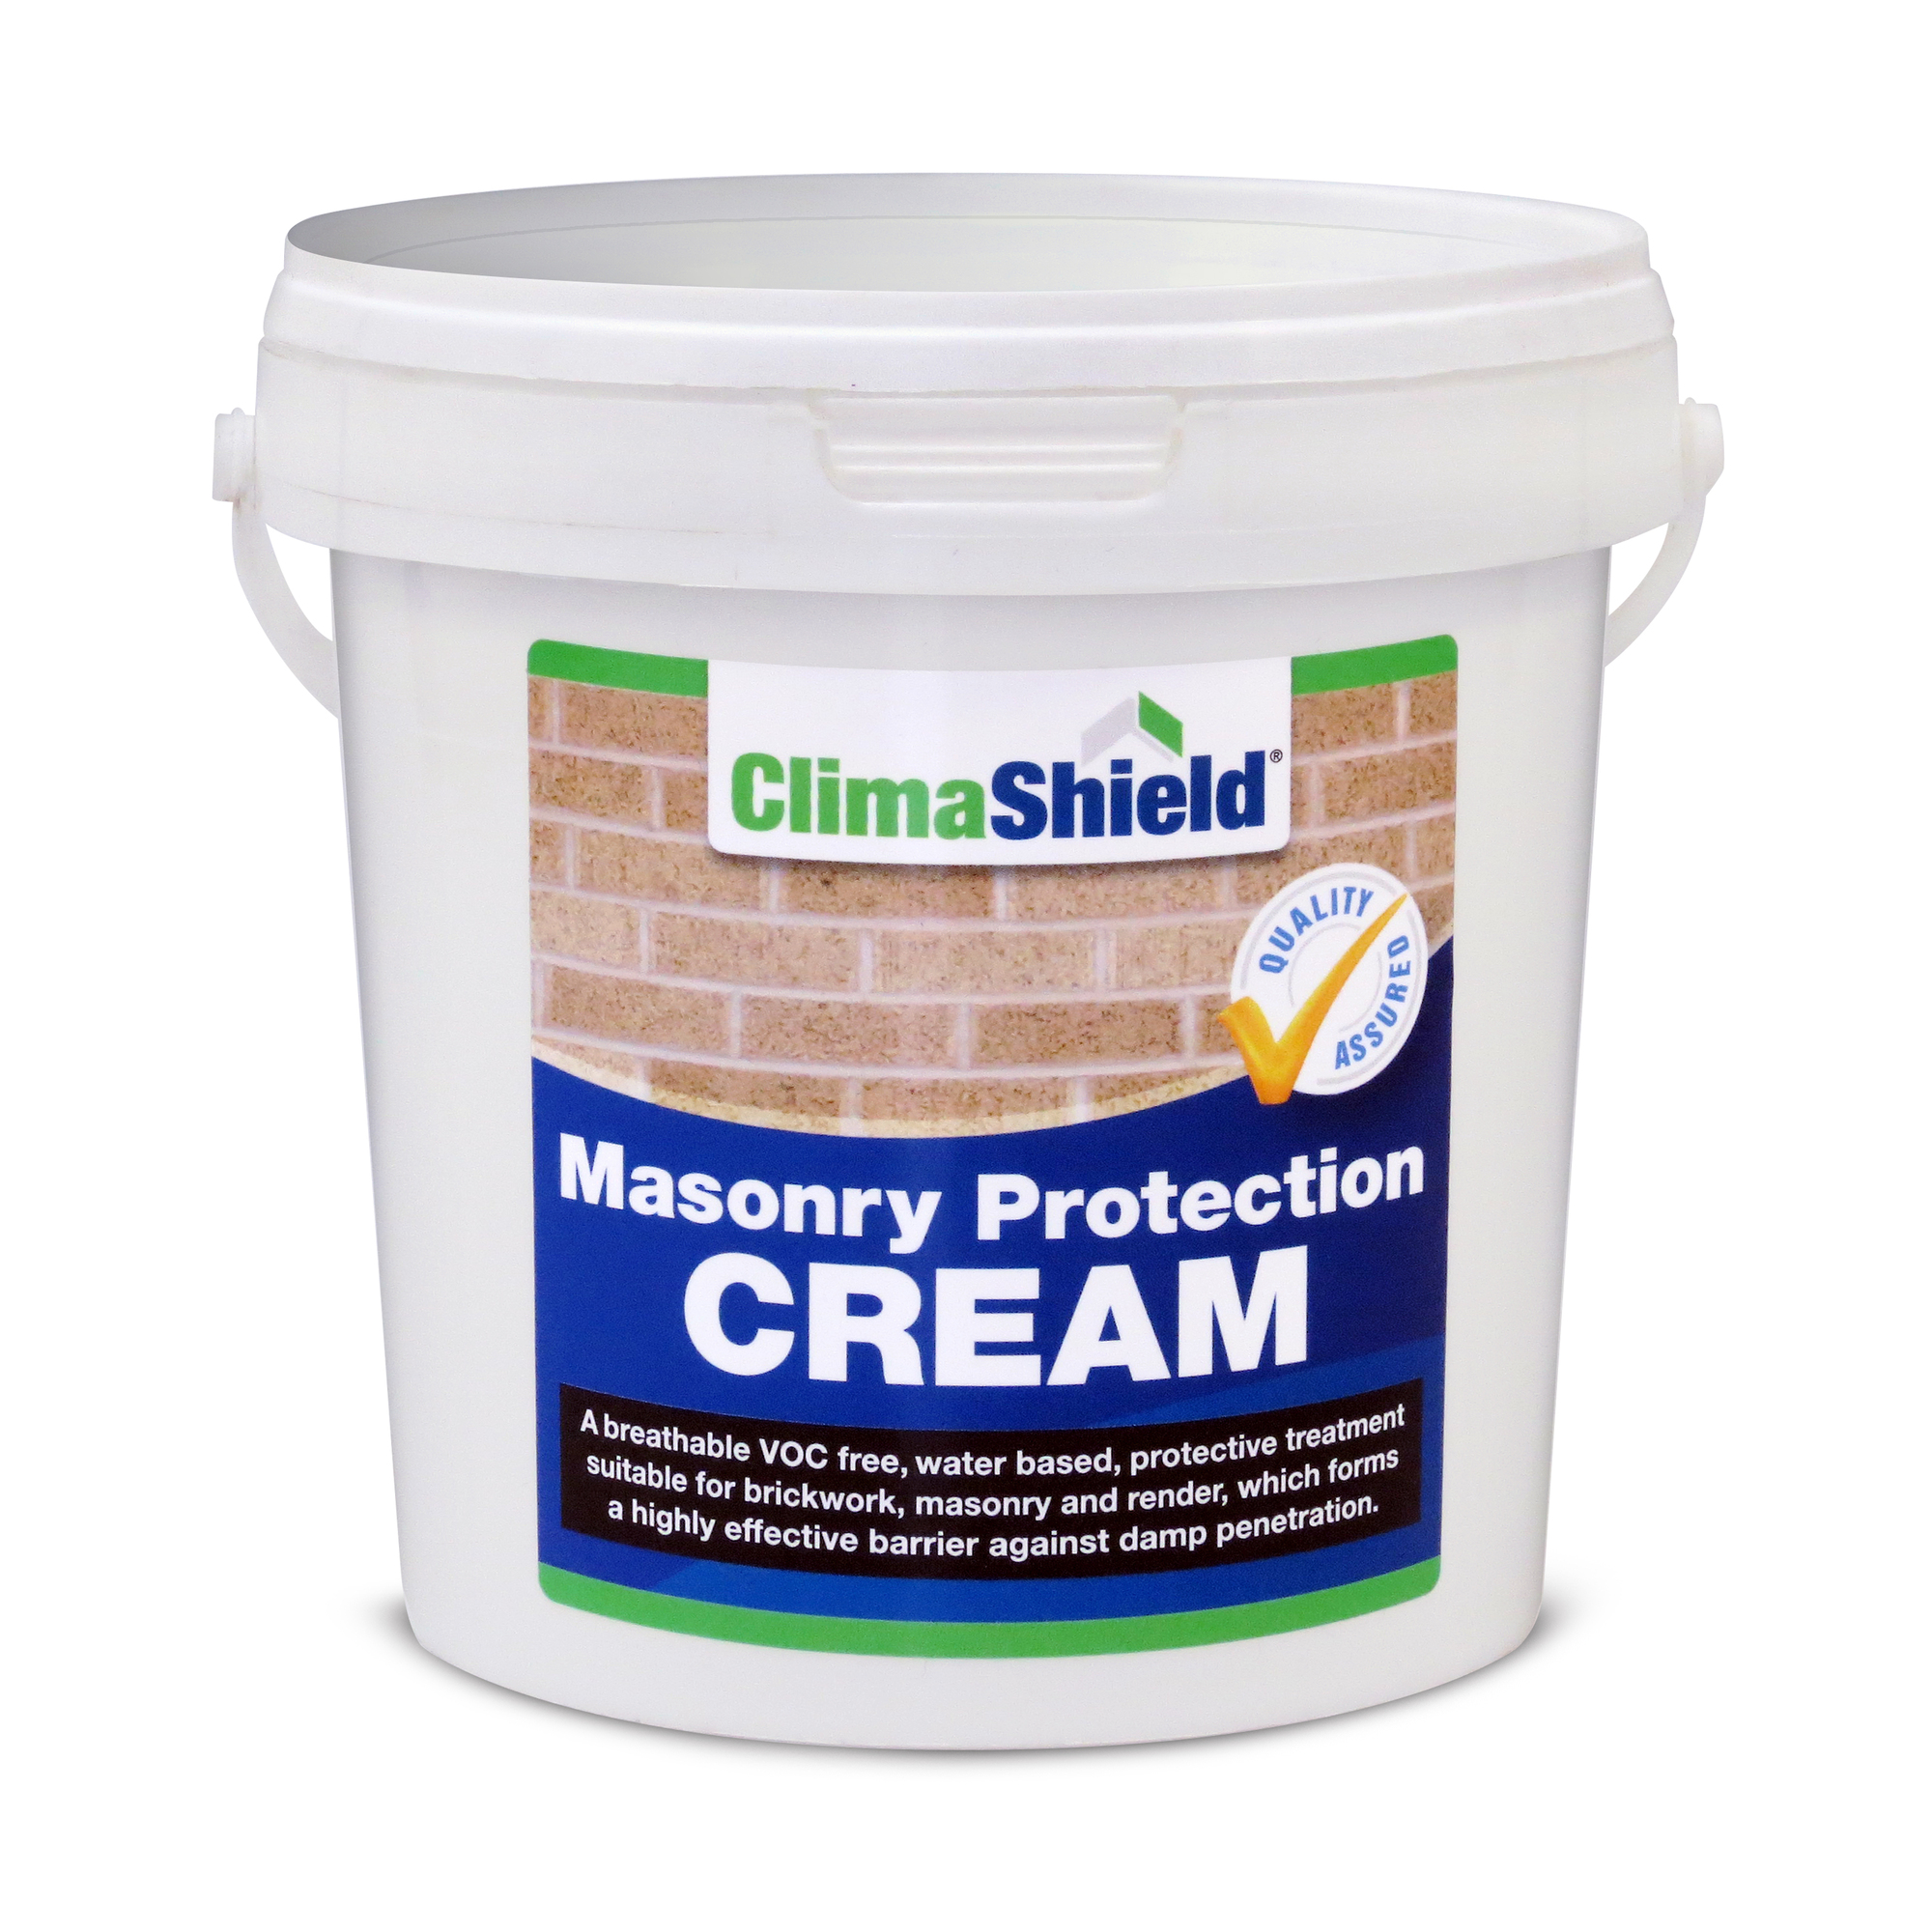 Masonry Protection Cream Brick Sealer Concrete Waterproofing Sealer Smartseal